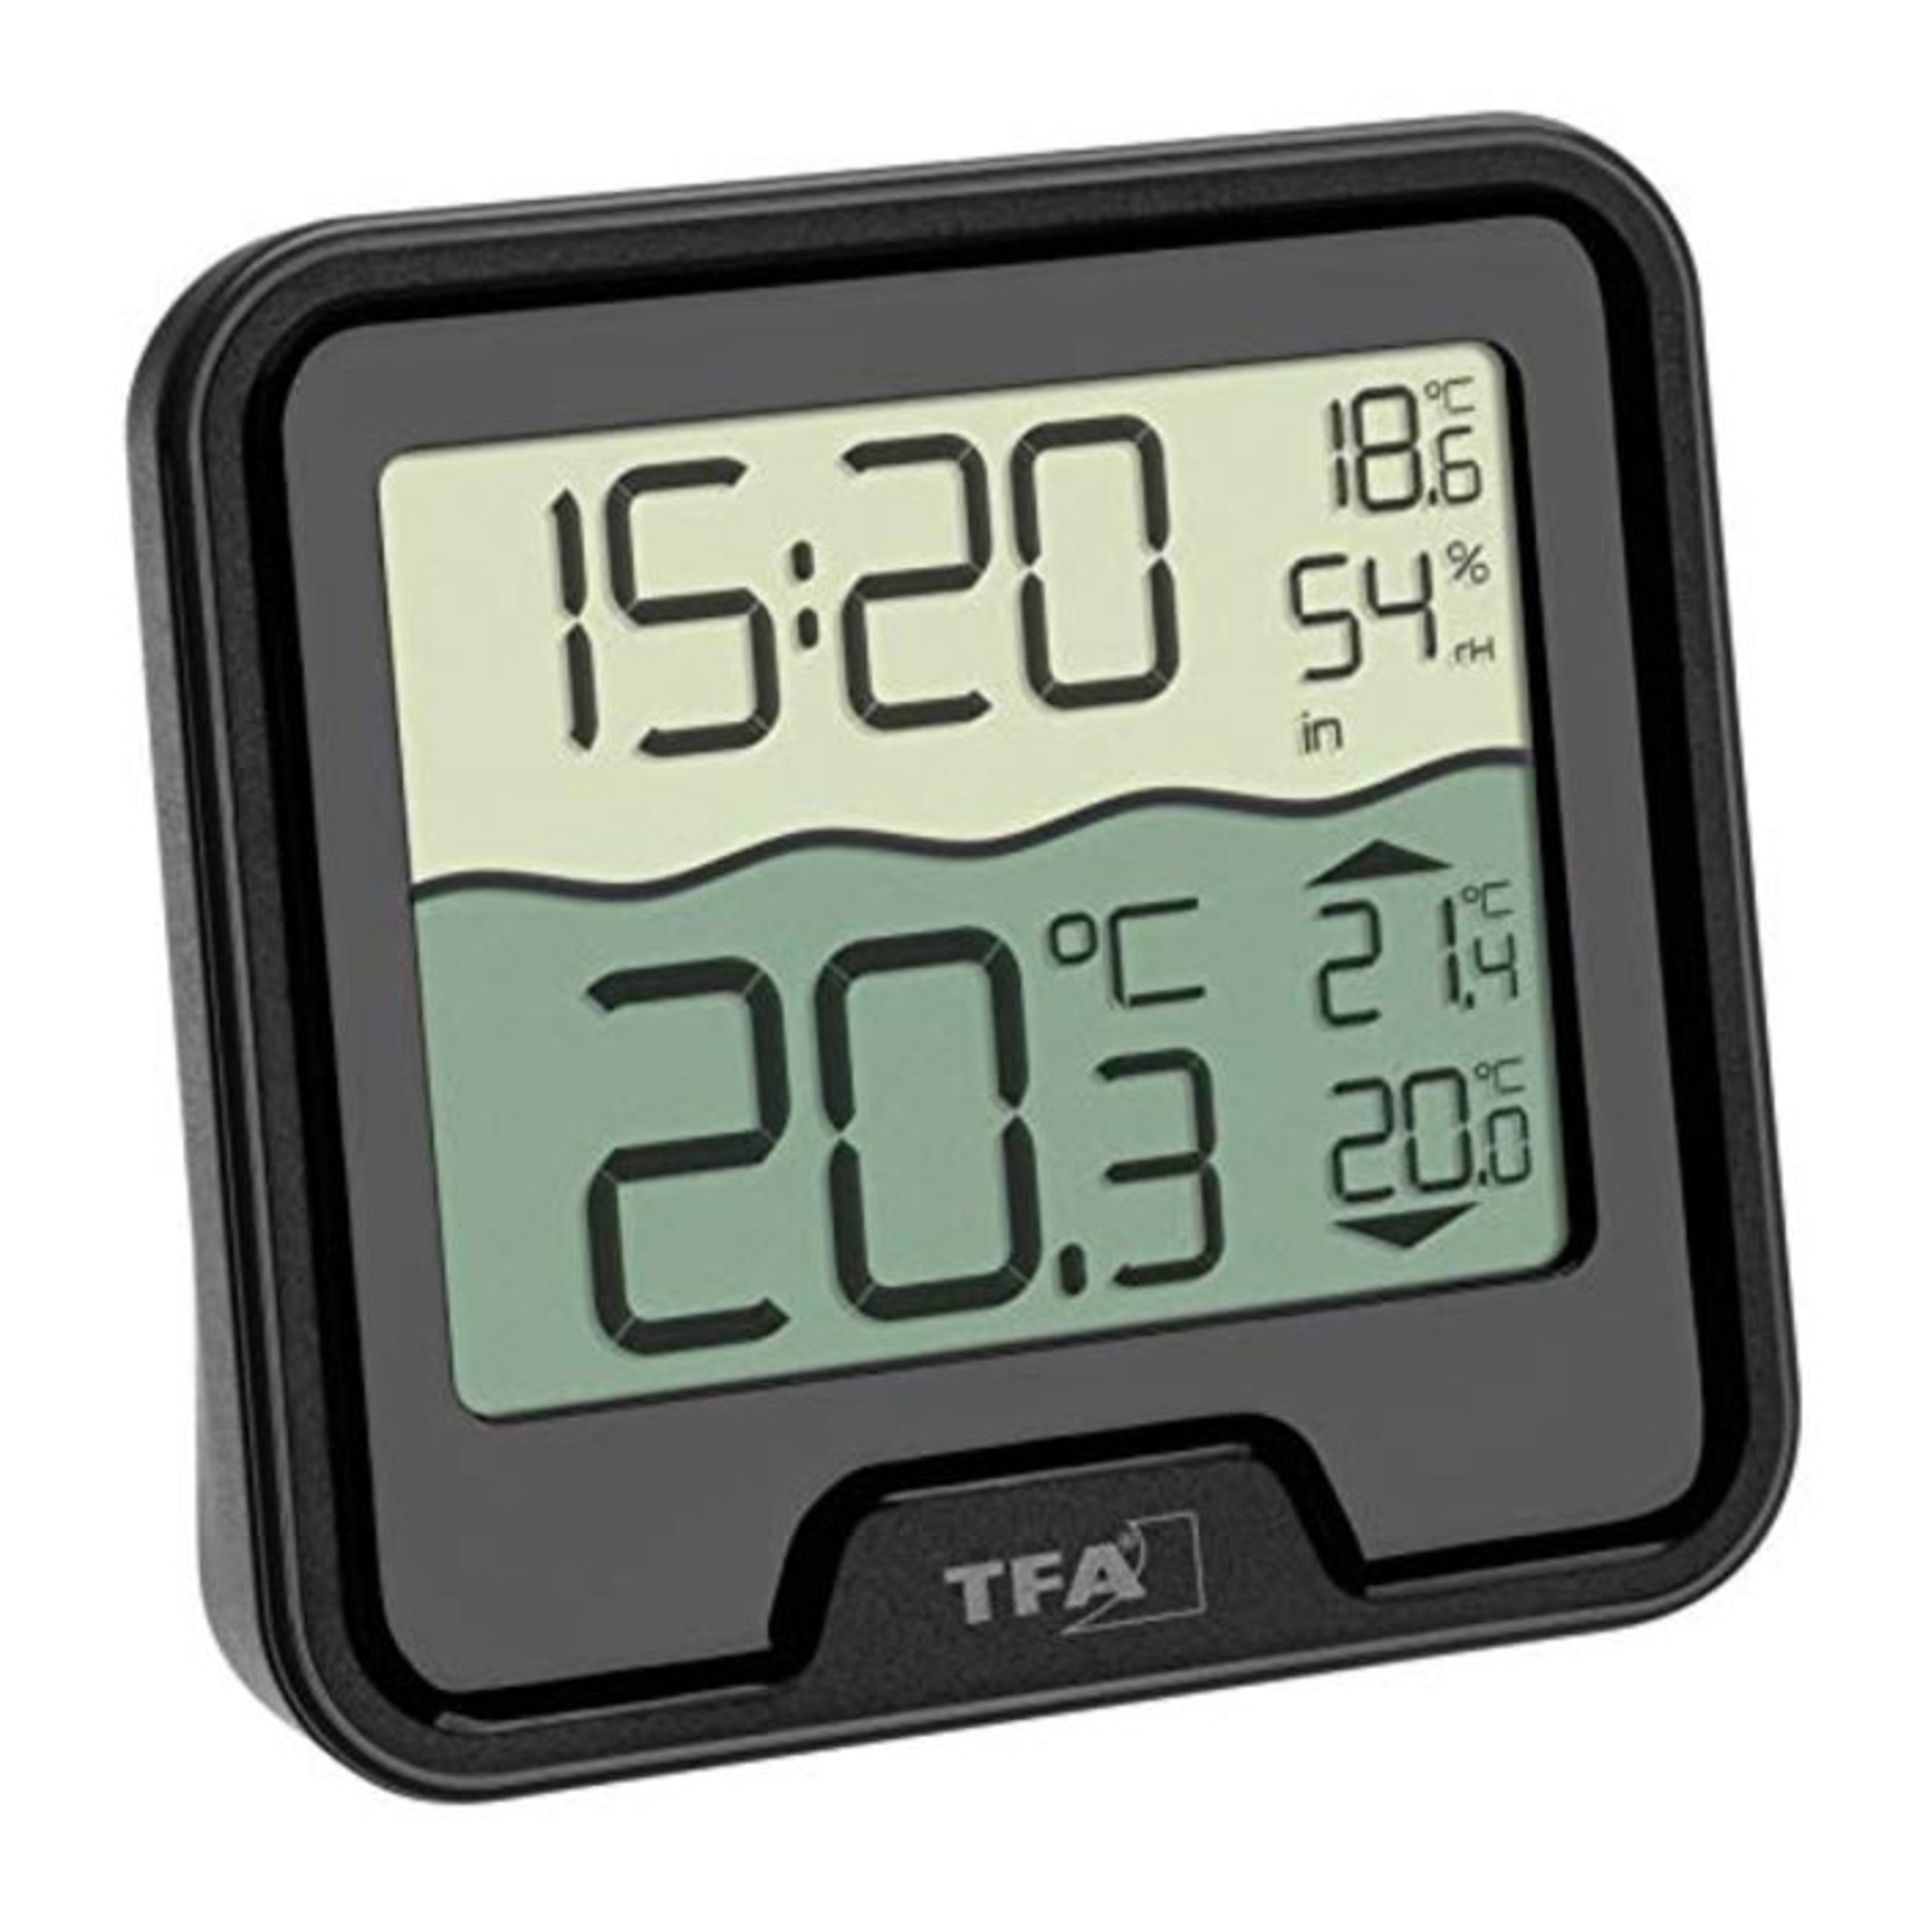 TFA Dostmann Marbella Wireless Pool Thermometer, Black, L110 x W110 x H210 mm